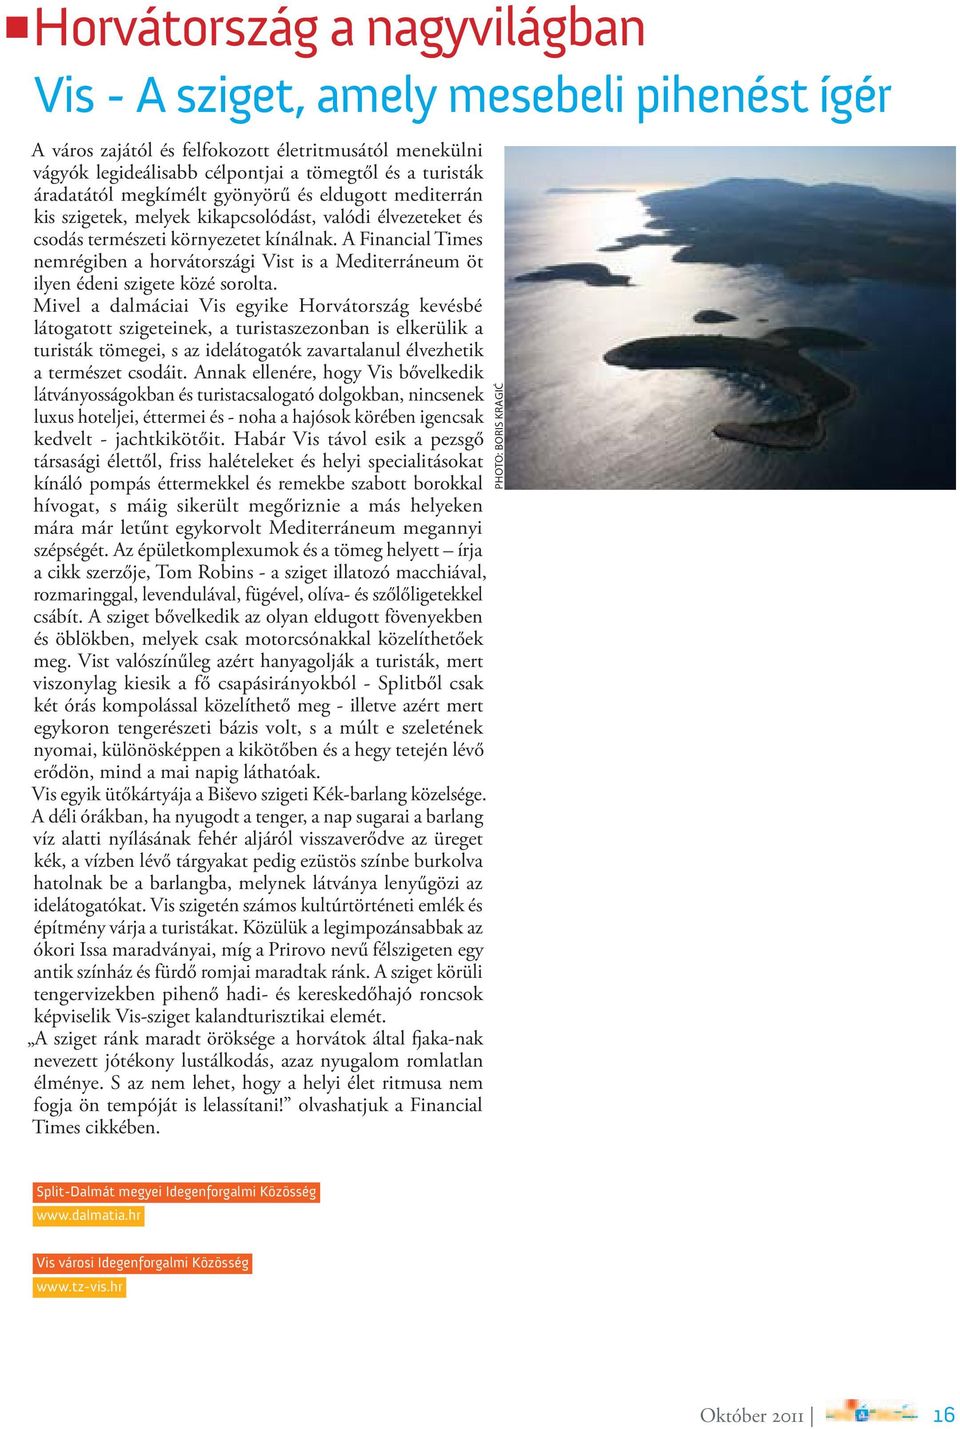 A Financial Times nemrégiben a horvátországi Vist is a Mediterráneum öt ilyen édeni szigete közé sorolta.